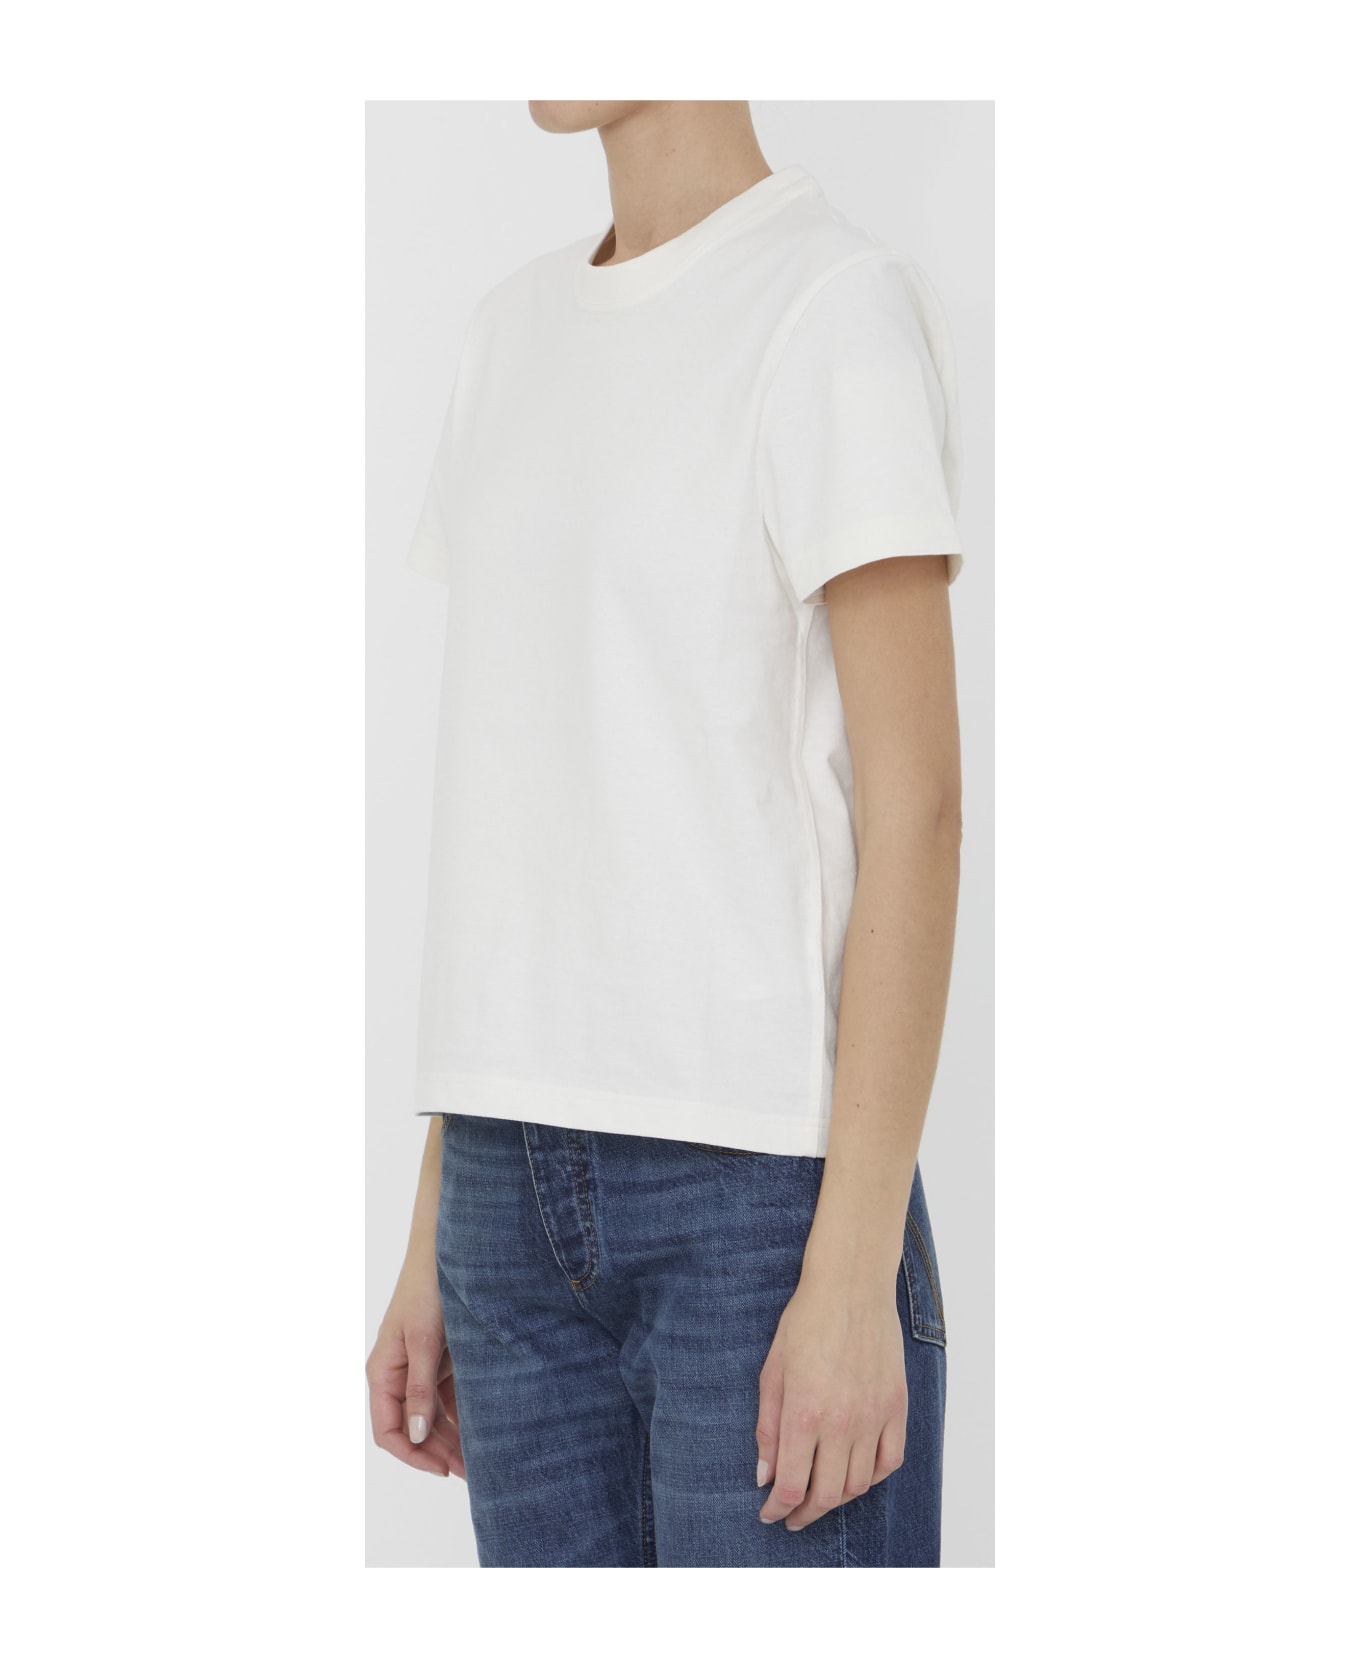 Bottega Veneta White Cotton T-shirt - WHITE